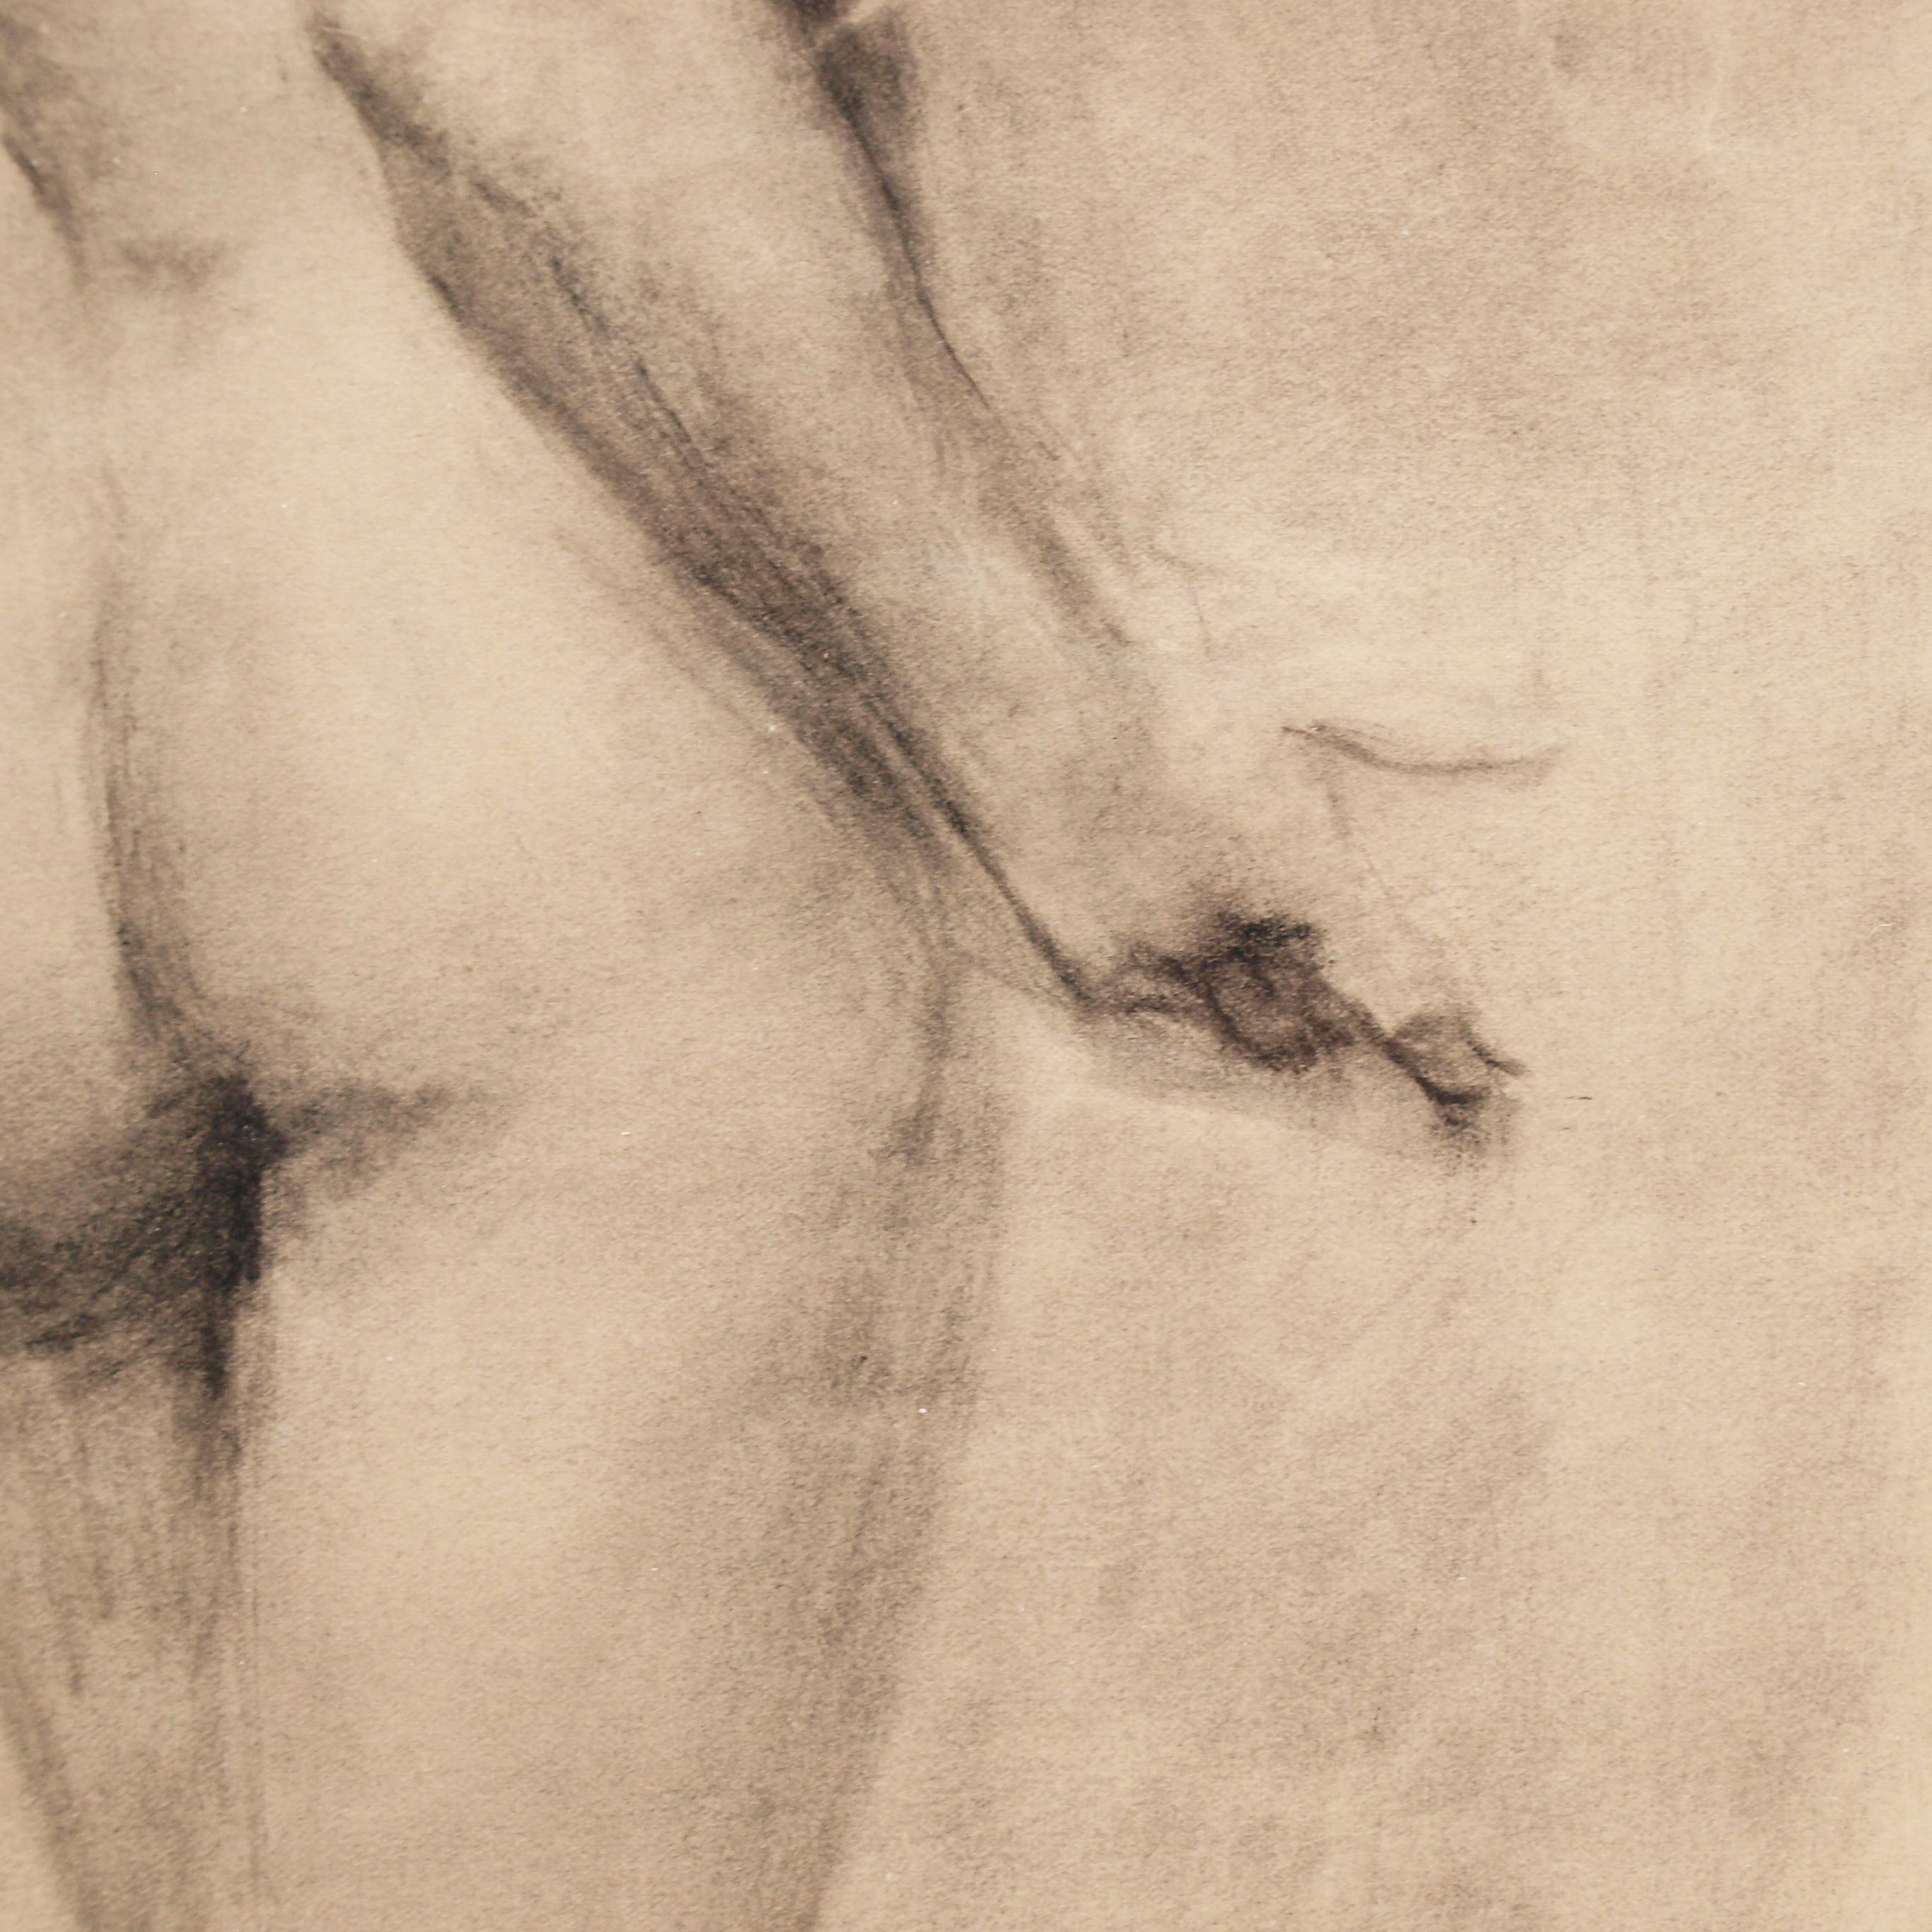 Étude de nu d'un modèle masculin par Alfred Aaron Wolmark 1877-1961 exécutée à la craie noire et signée 